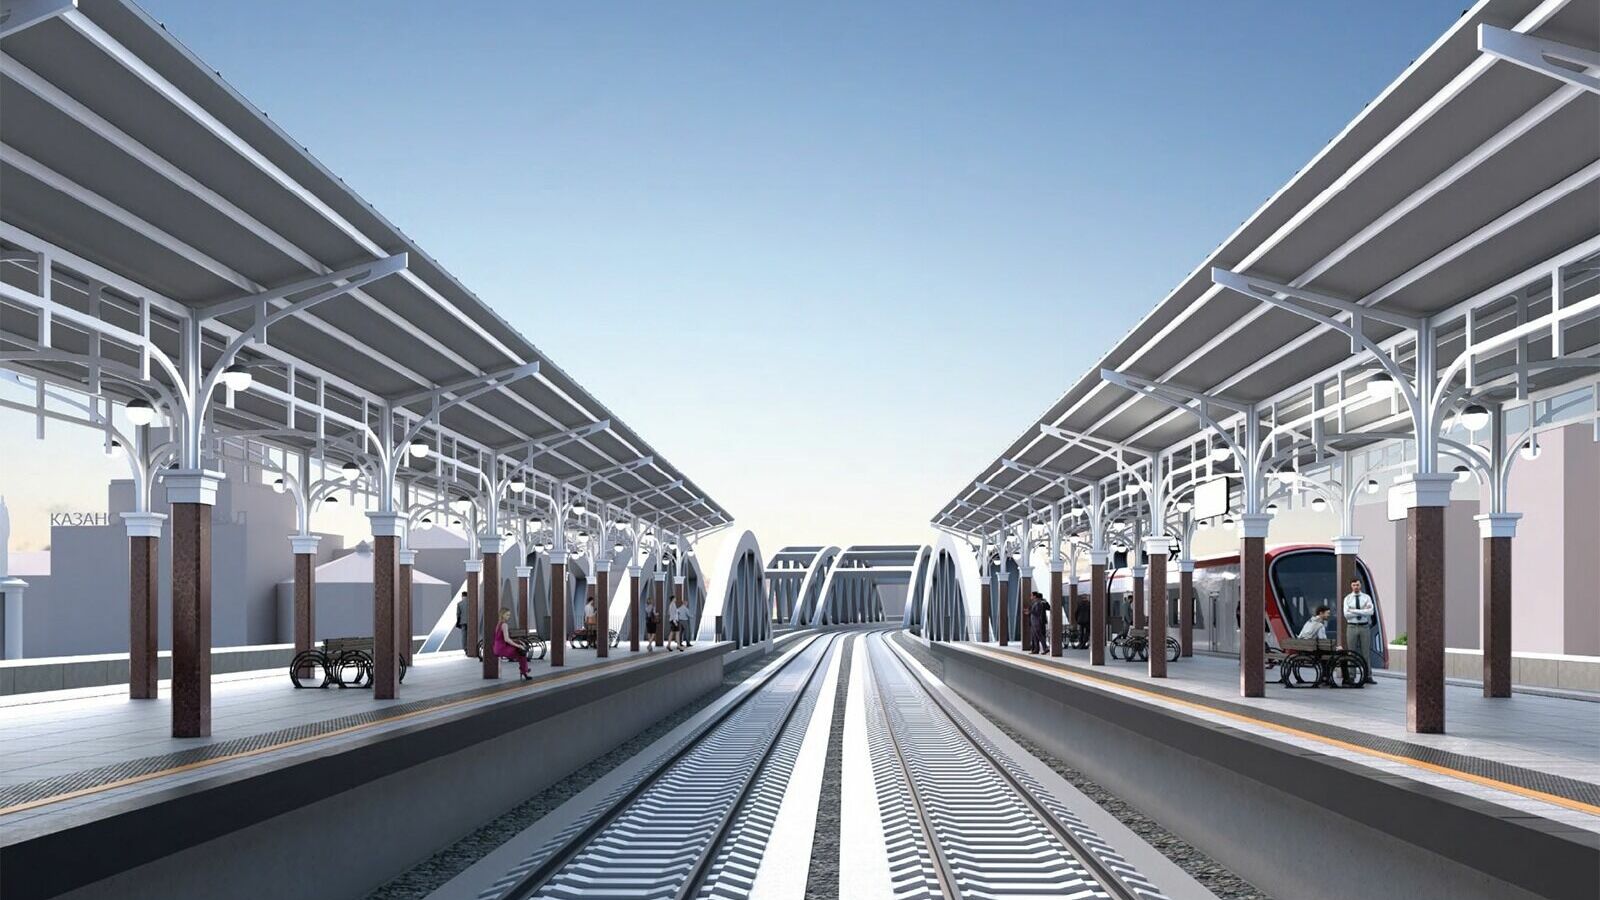 РЖД: реконструированную Площадь трех вокзалов откроют для пассажиров в мае